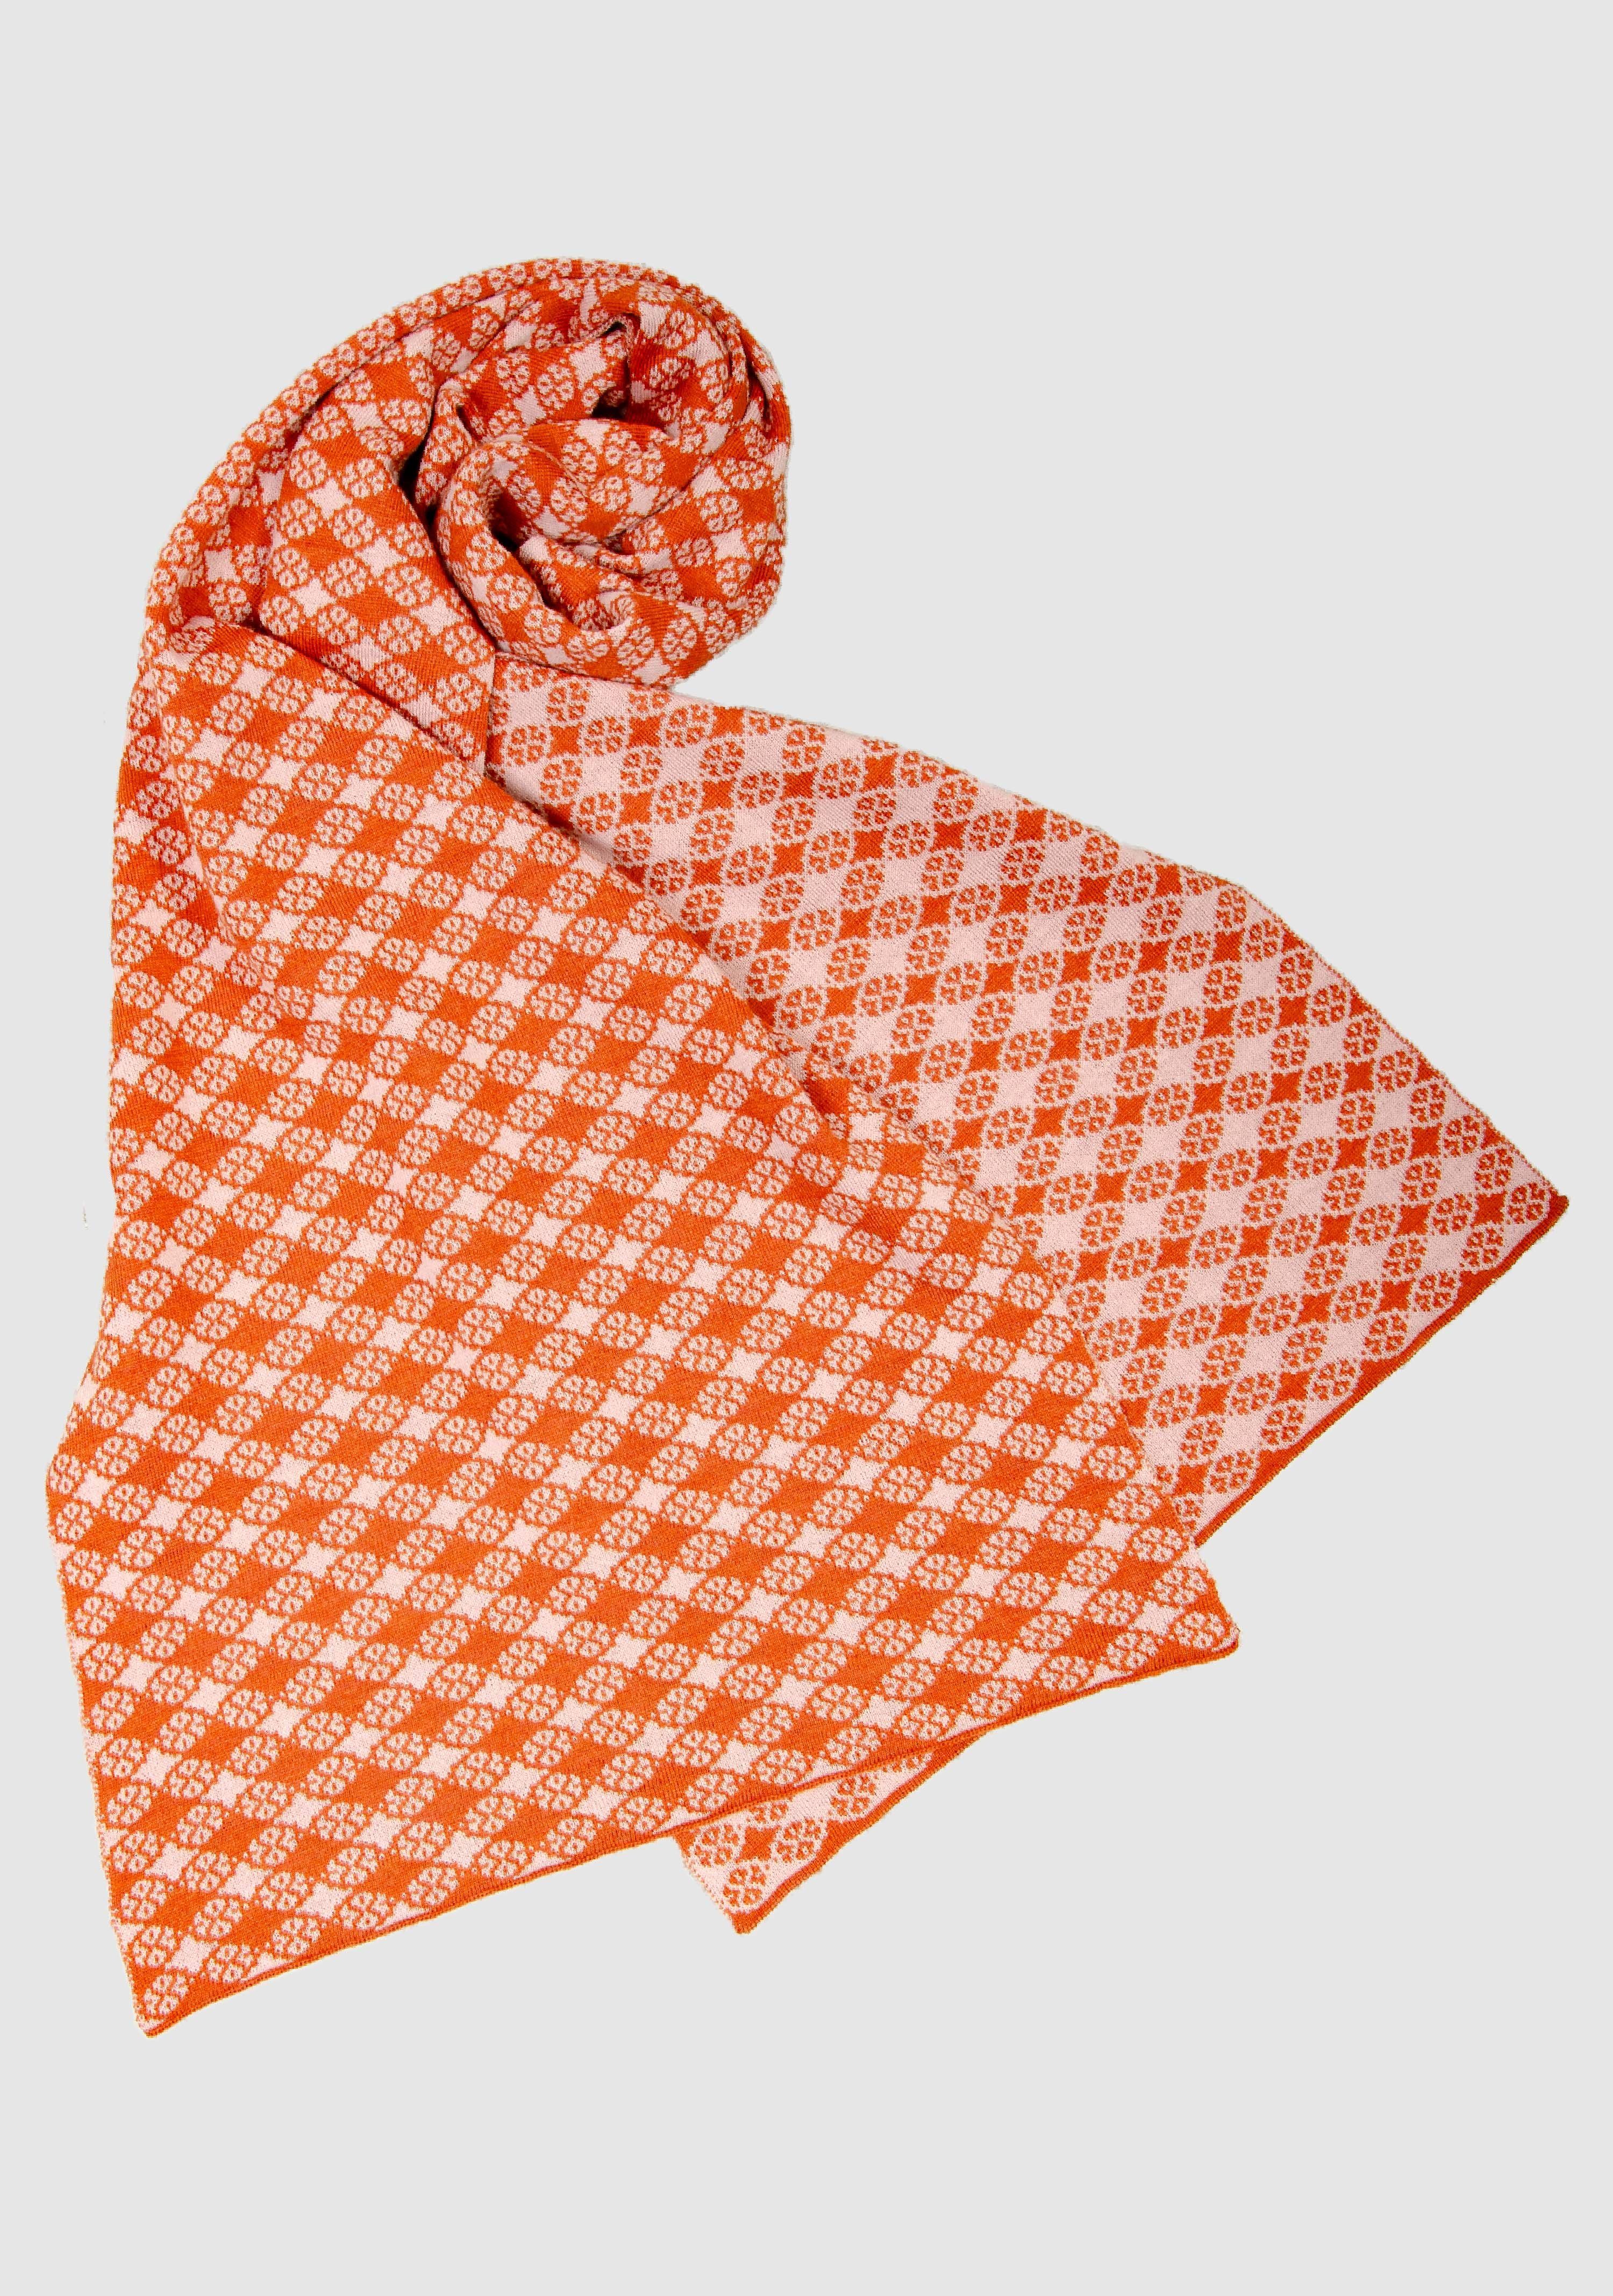 LANARTO slow fashion Wollschal 100% Farben extrasoft Schal in orange_rosa schönen Blütenkaro Merino